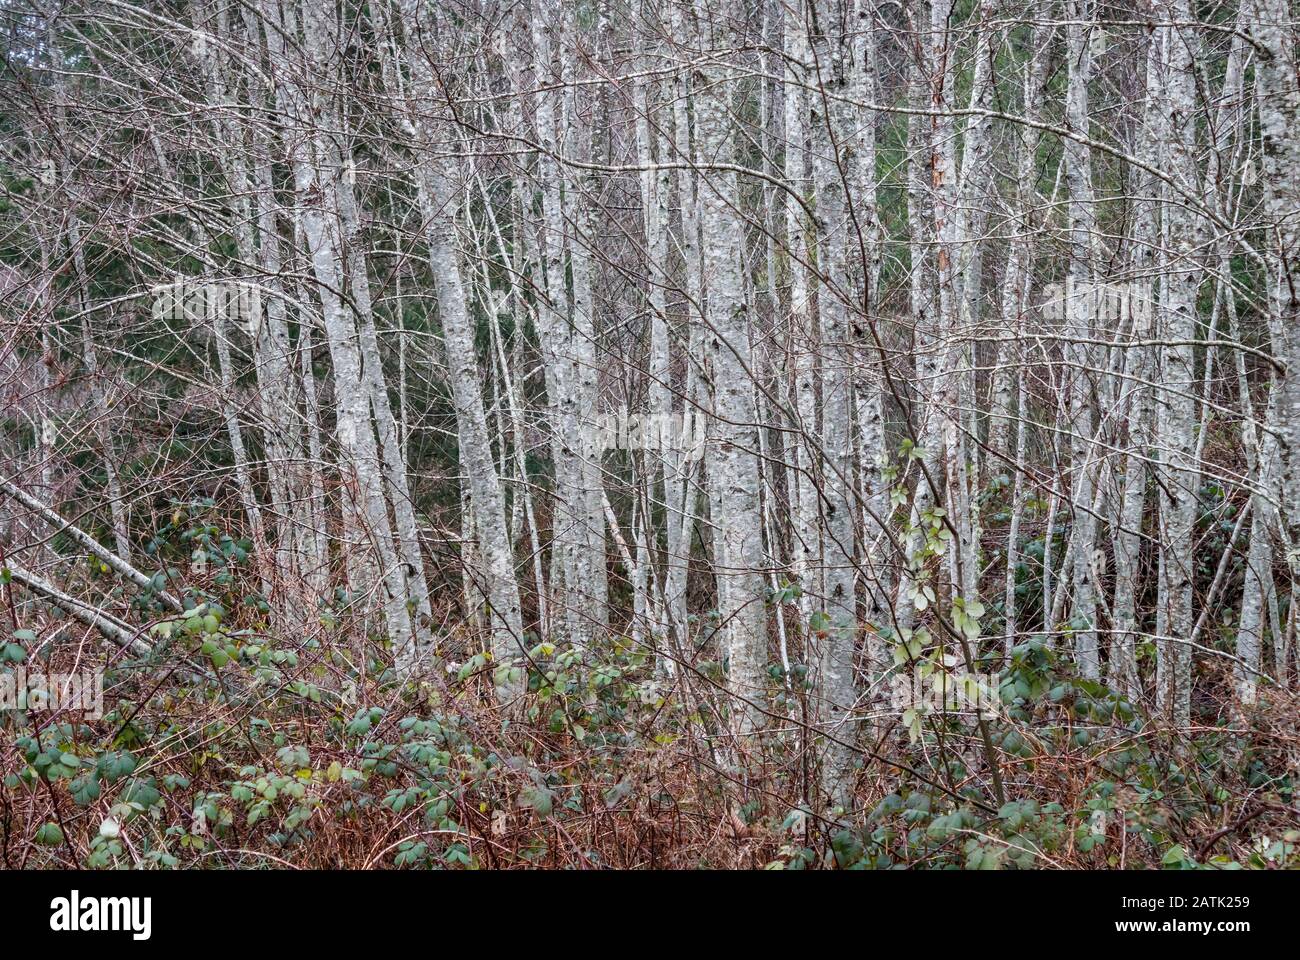 Die im Winter nackten roten Erlen bilden starke vertikale Linien zwischen einem Vordergrund aus buntem Pinsel und Hintergrund dunkelgrüner Nadelbäume. Stockfoto